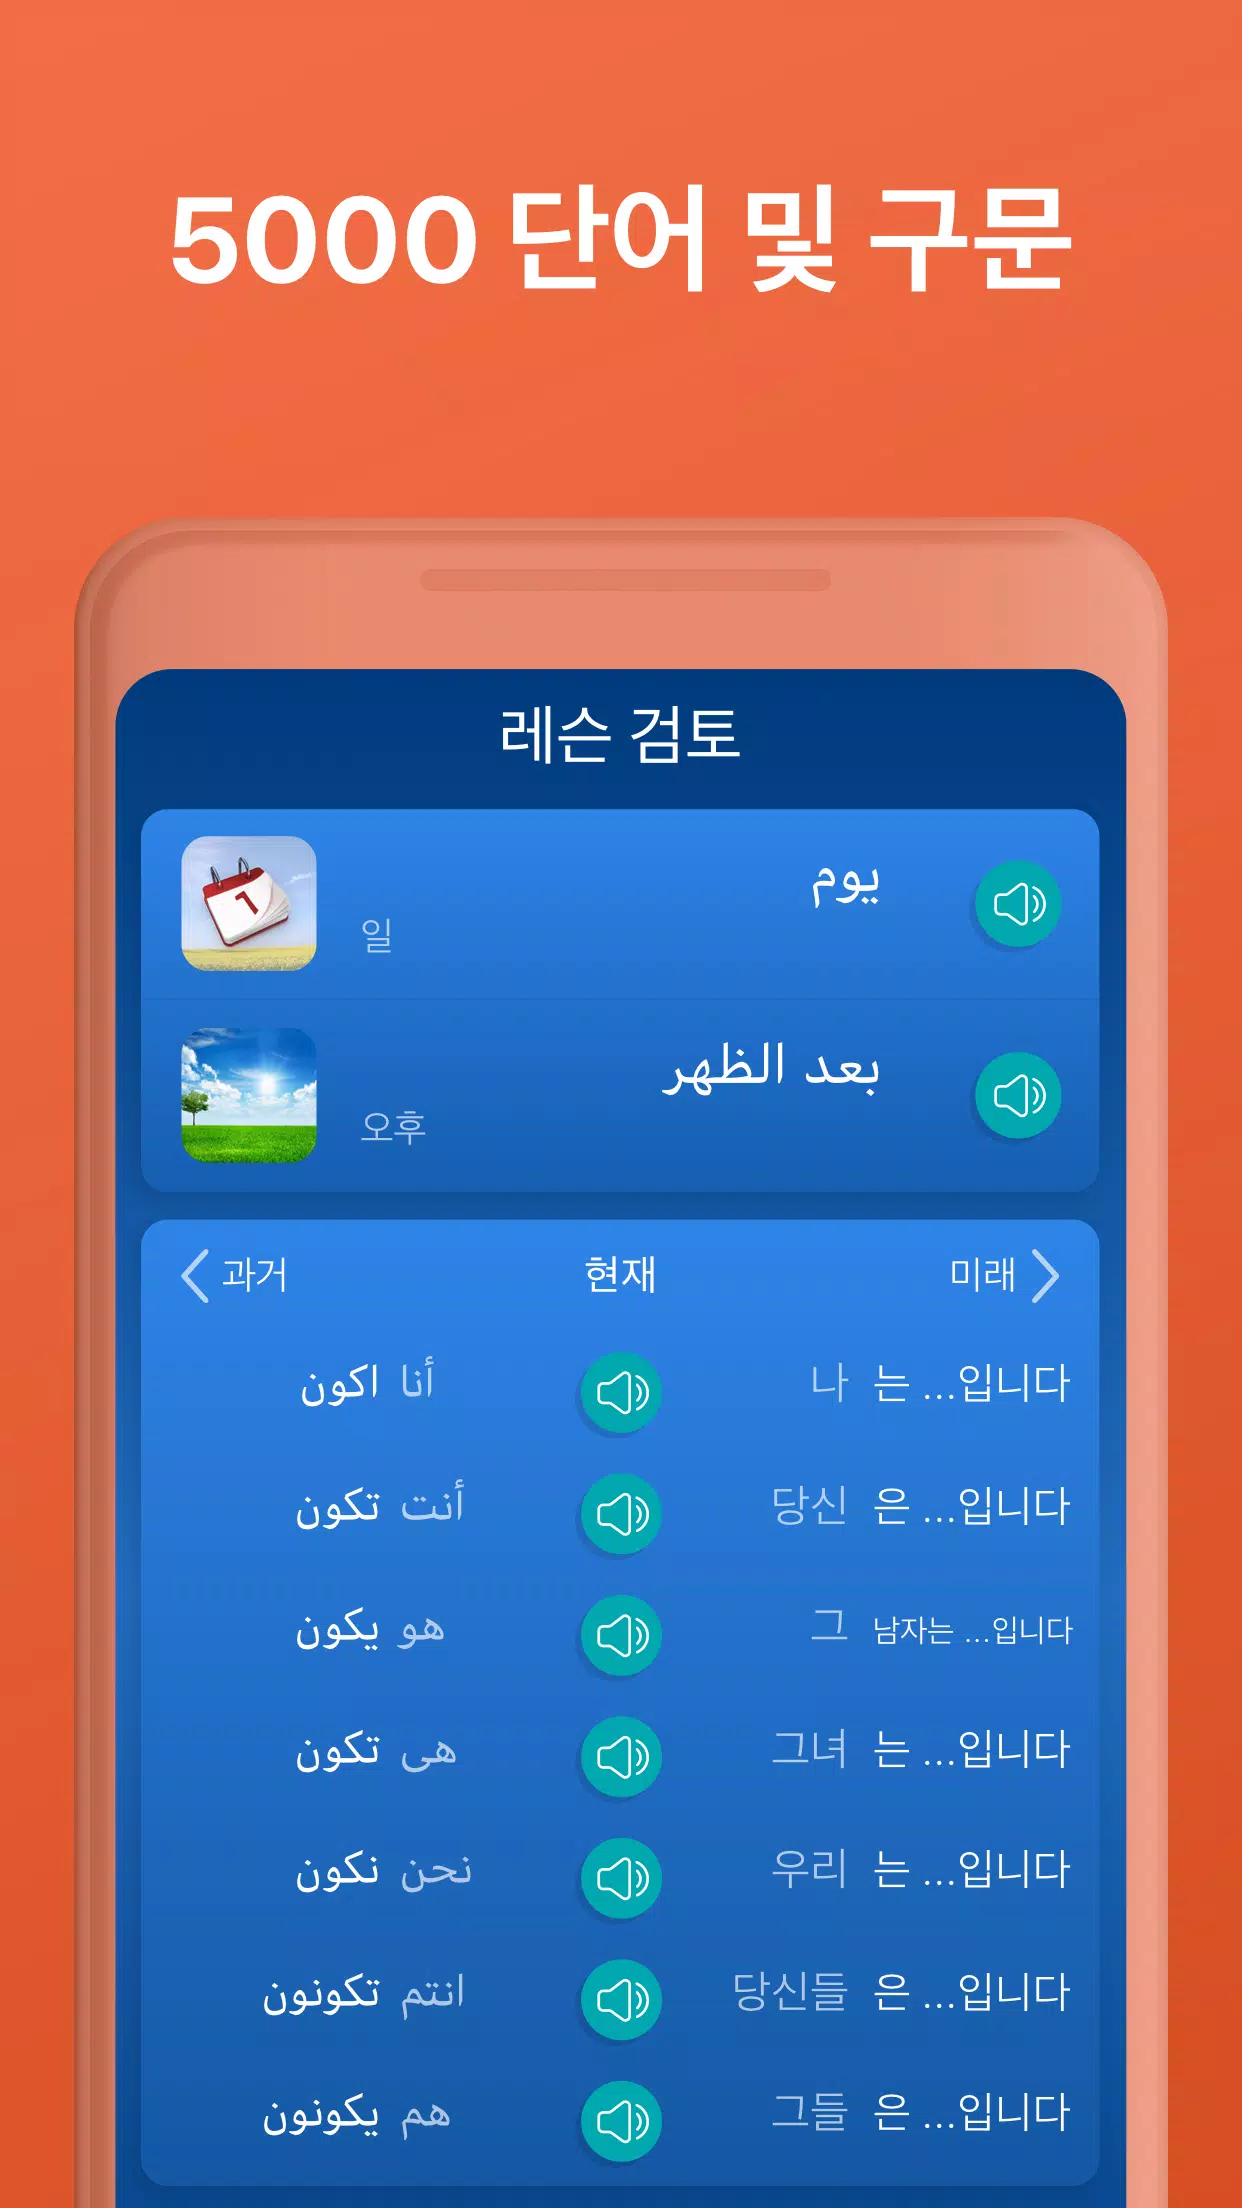 Android용 아랍어 학습 앱은 - 아랍어 회화 Apk 다운로드